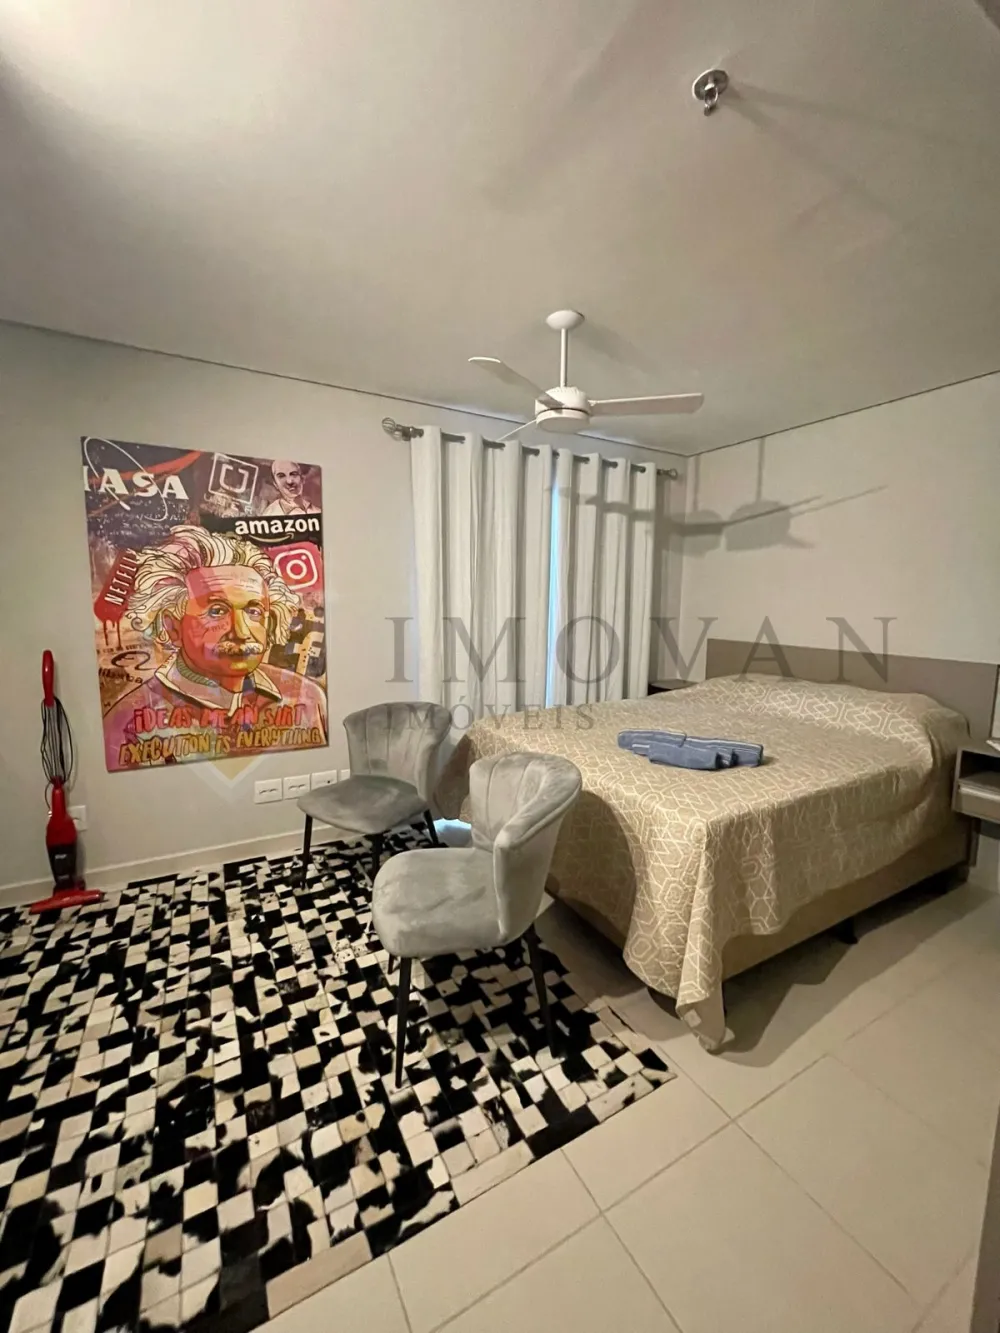 Comprar Apartamento / Kitchnet em Ribeirão Preto R$ 225.000,00 - Foto 3